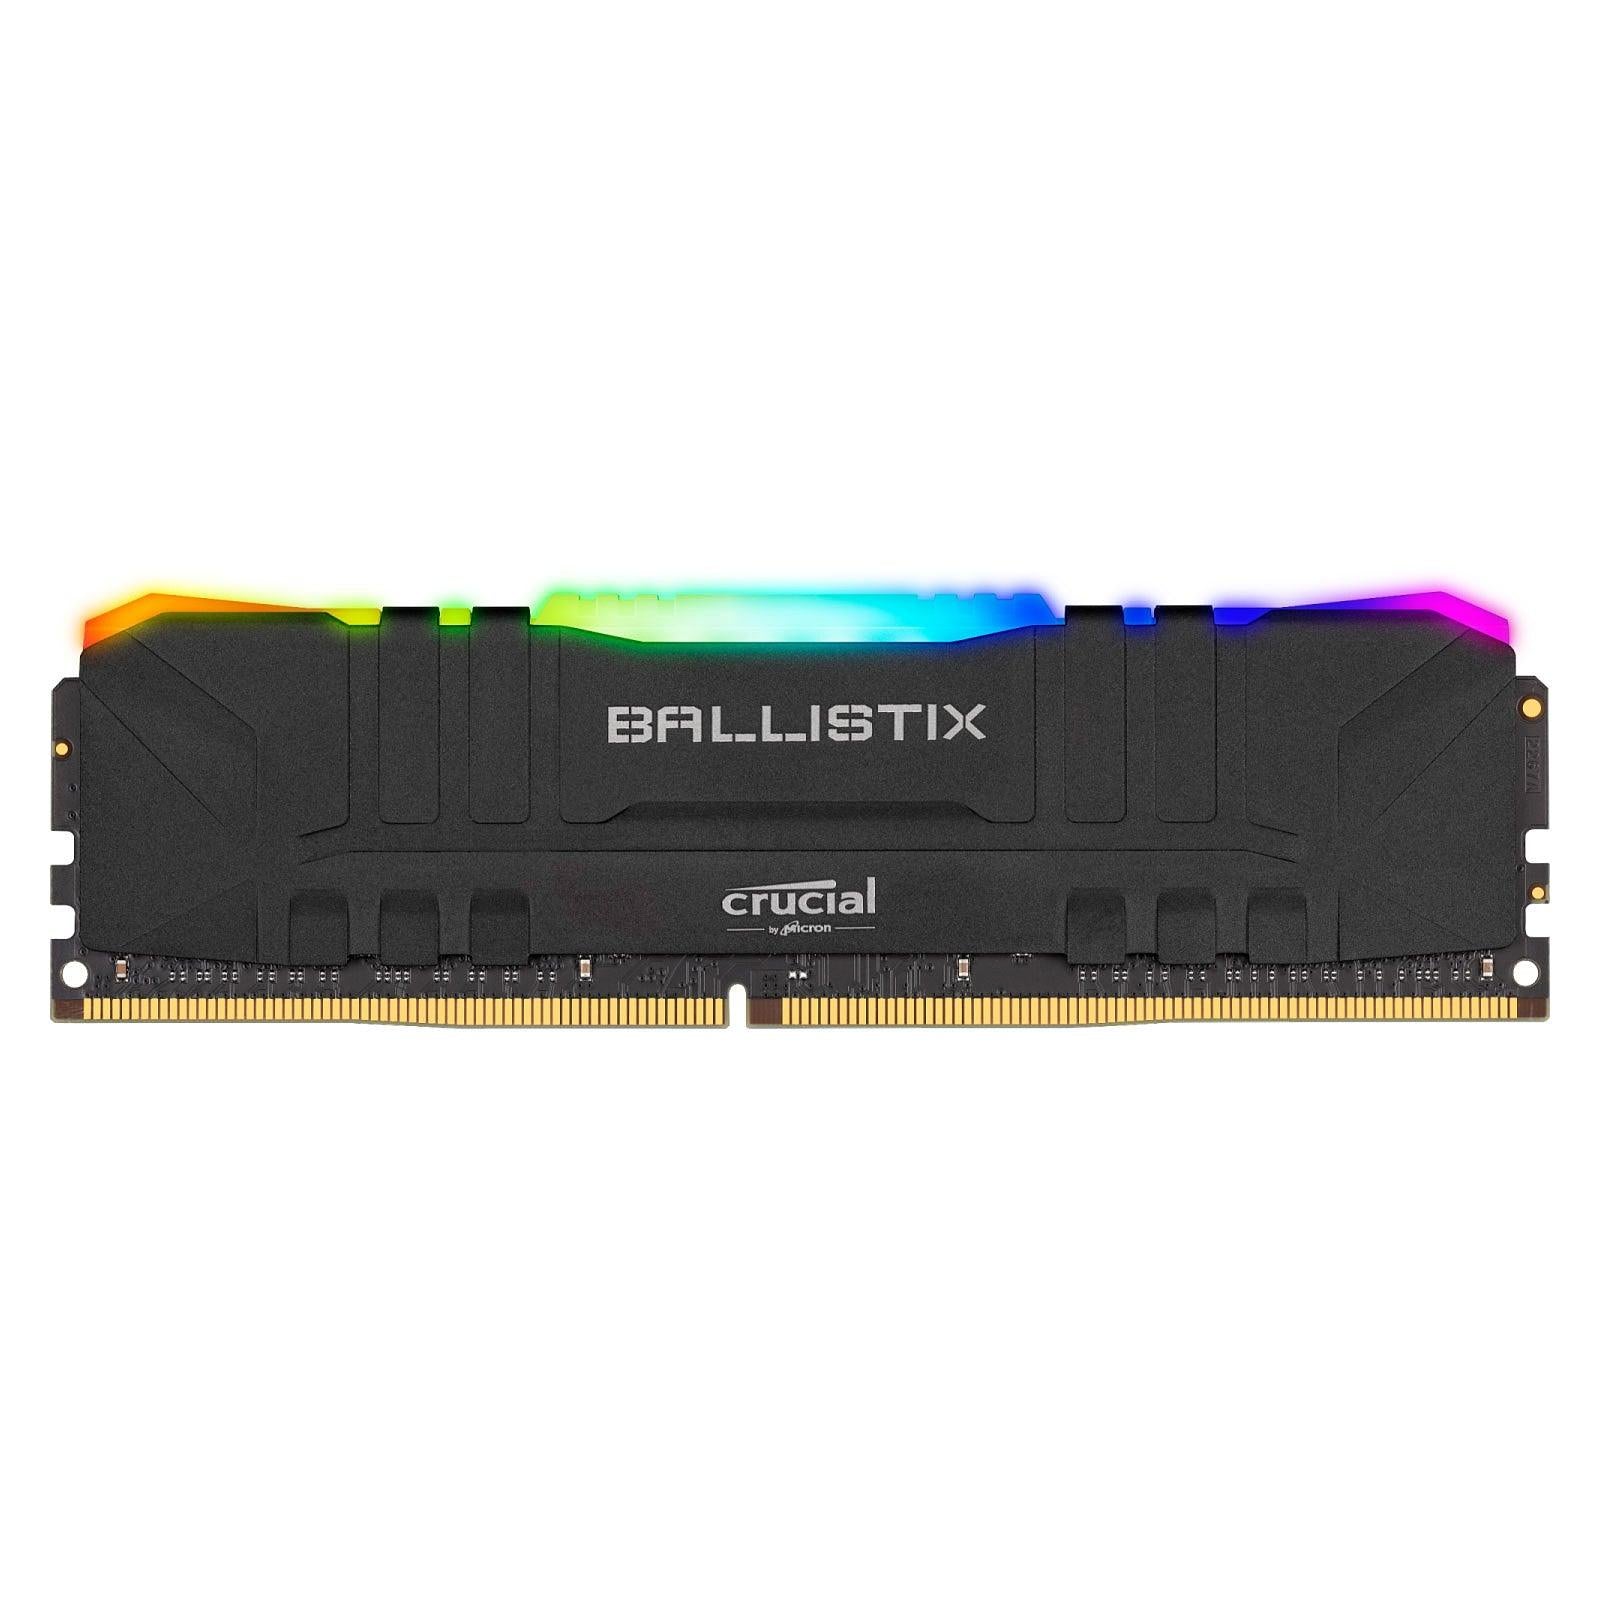 Crucial Ballistix RGB maroc 16 Go (2 x 8 Go) DDR4 3200 MHz CL16 Noir ram Prix Barrette Memoire pas cher - smartmarket.ma